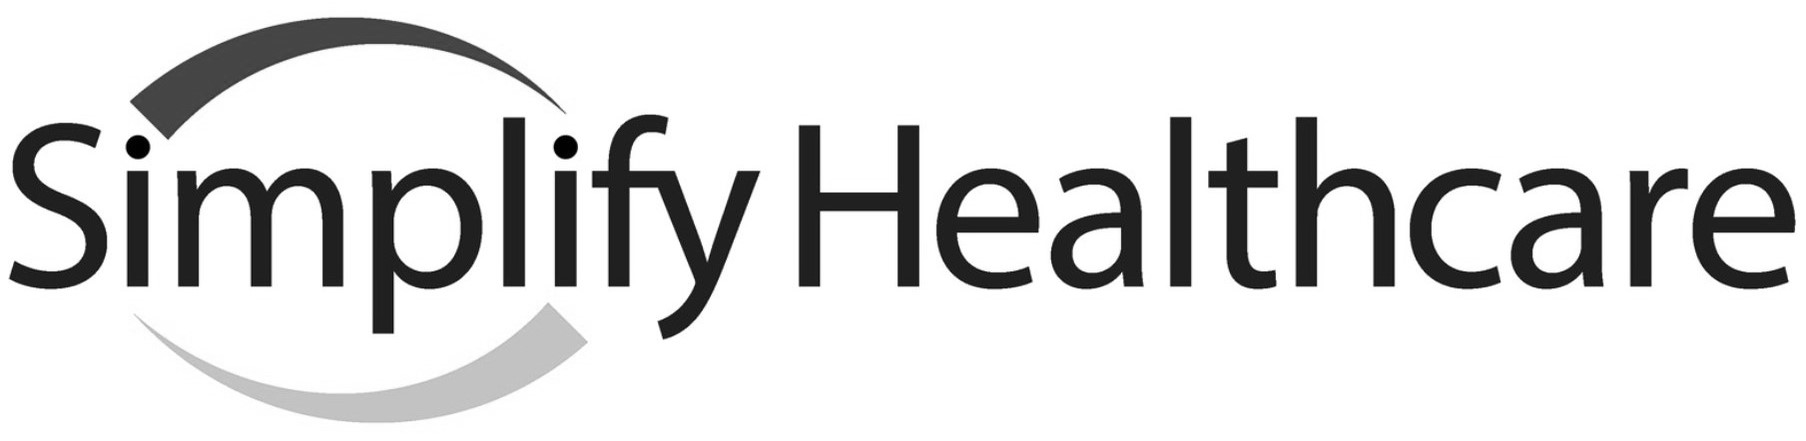 Simplify Healthcare Logo (PRNewsfoto/Simplify Healthcare)